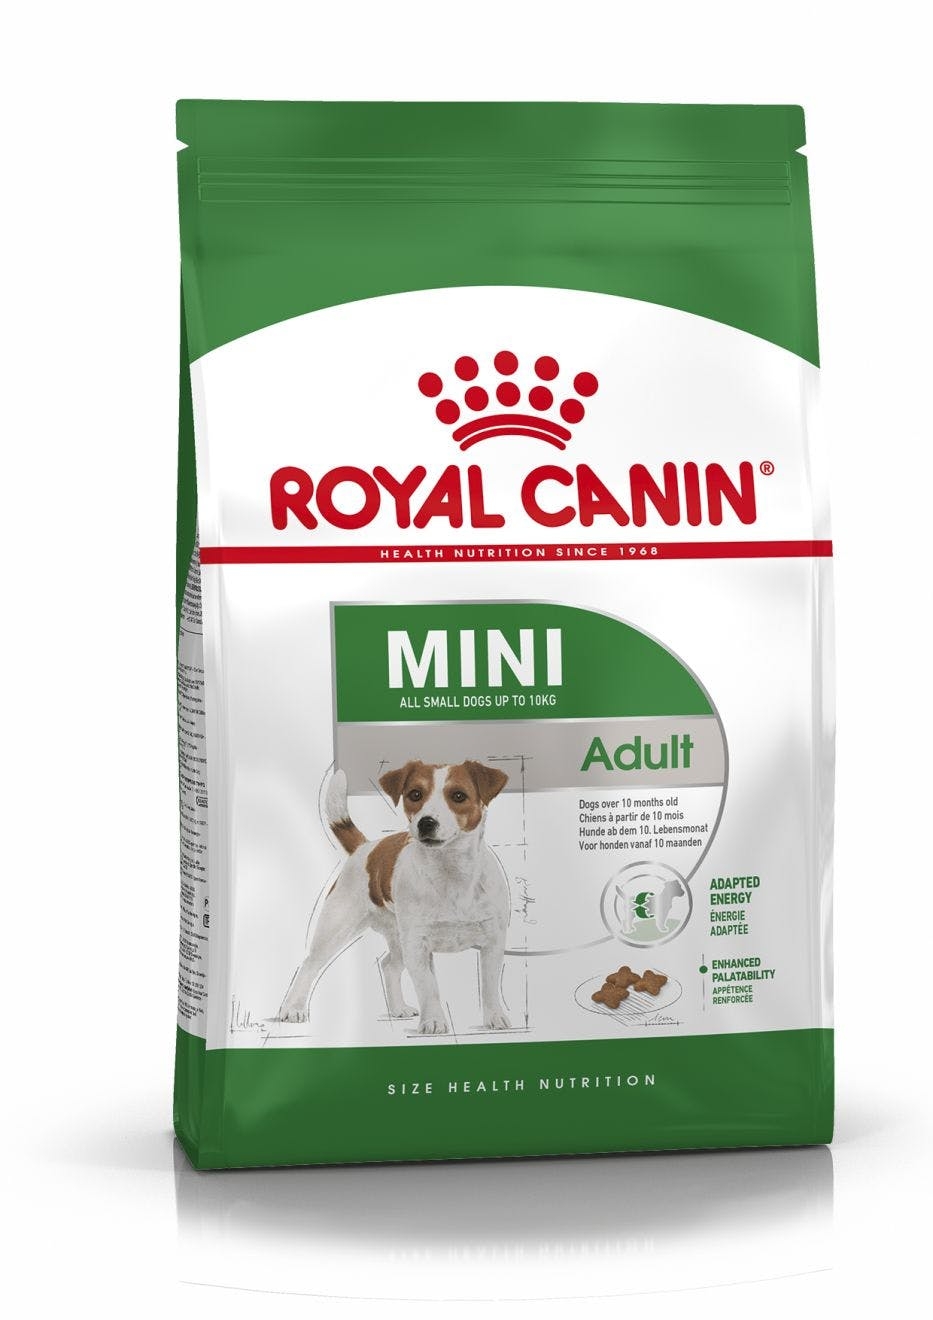 Royal Canin Mini Adult 1-10 kg. Voksen og Moden. Over 10 måneder